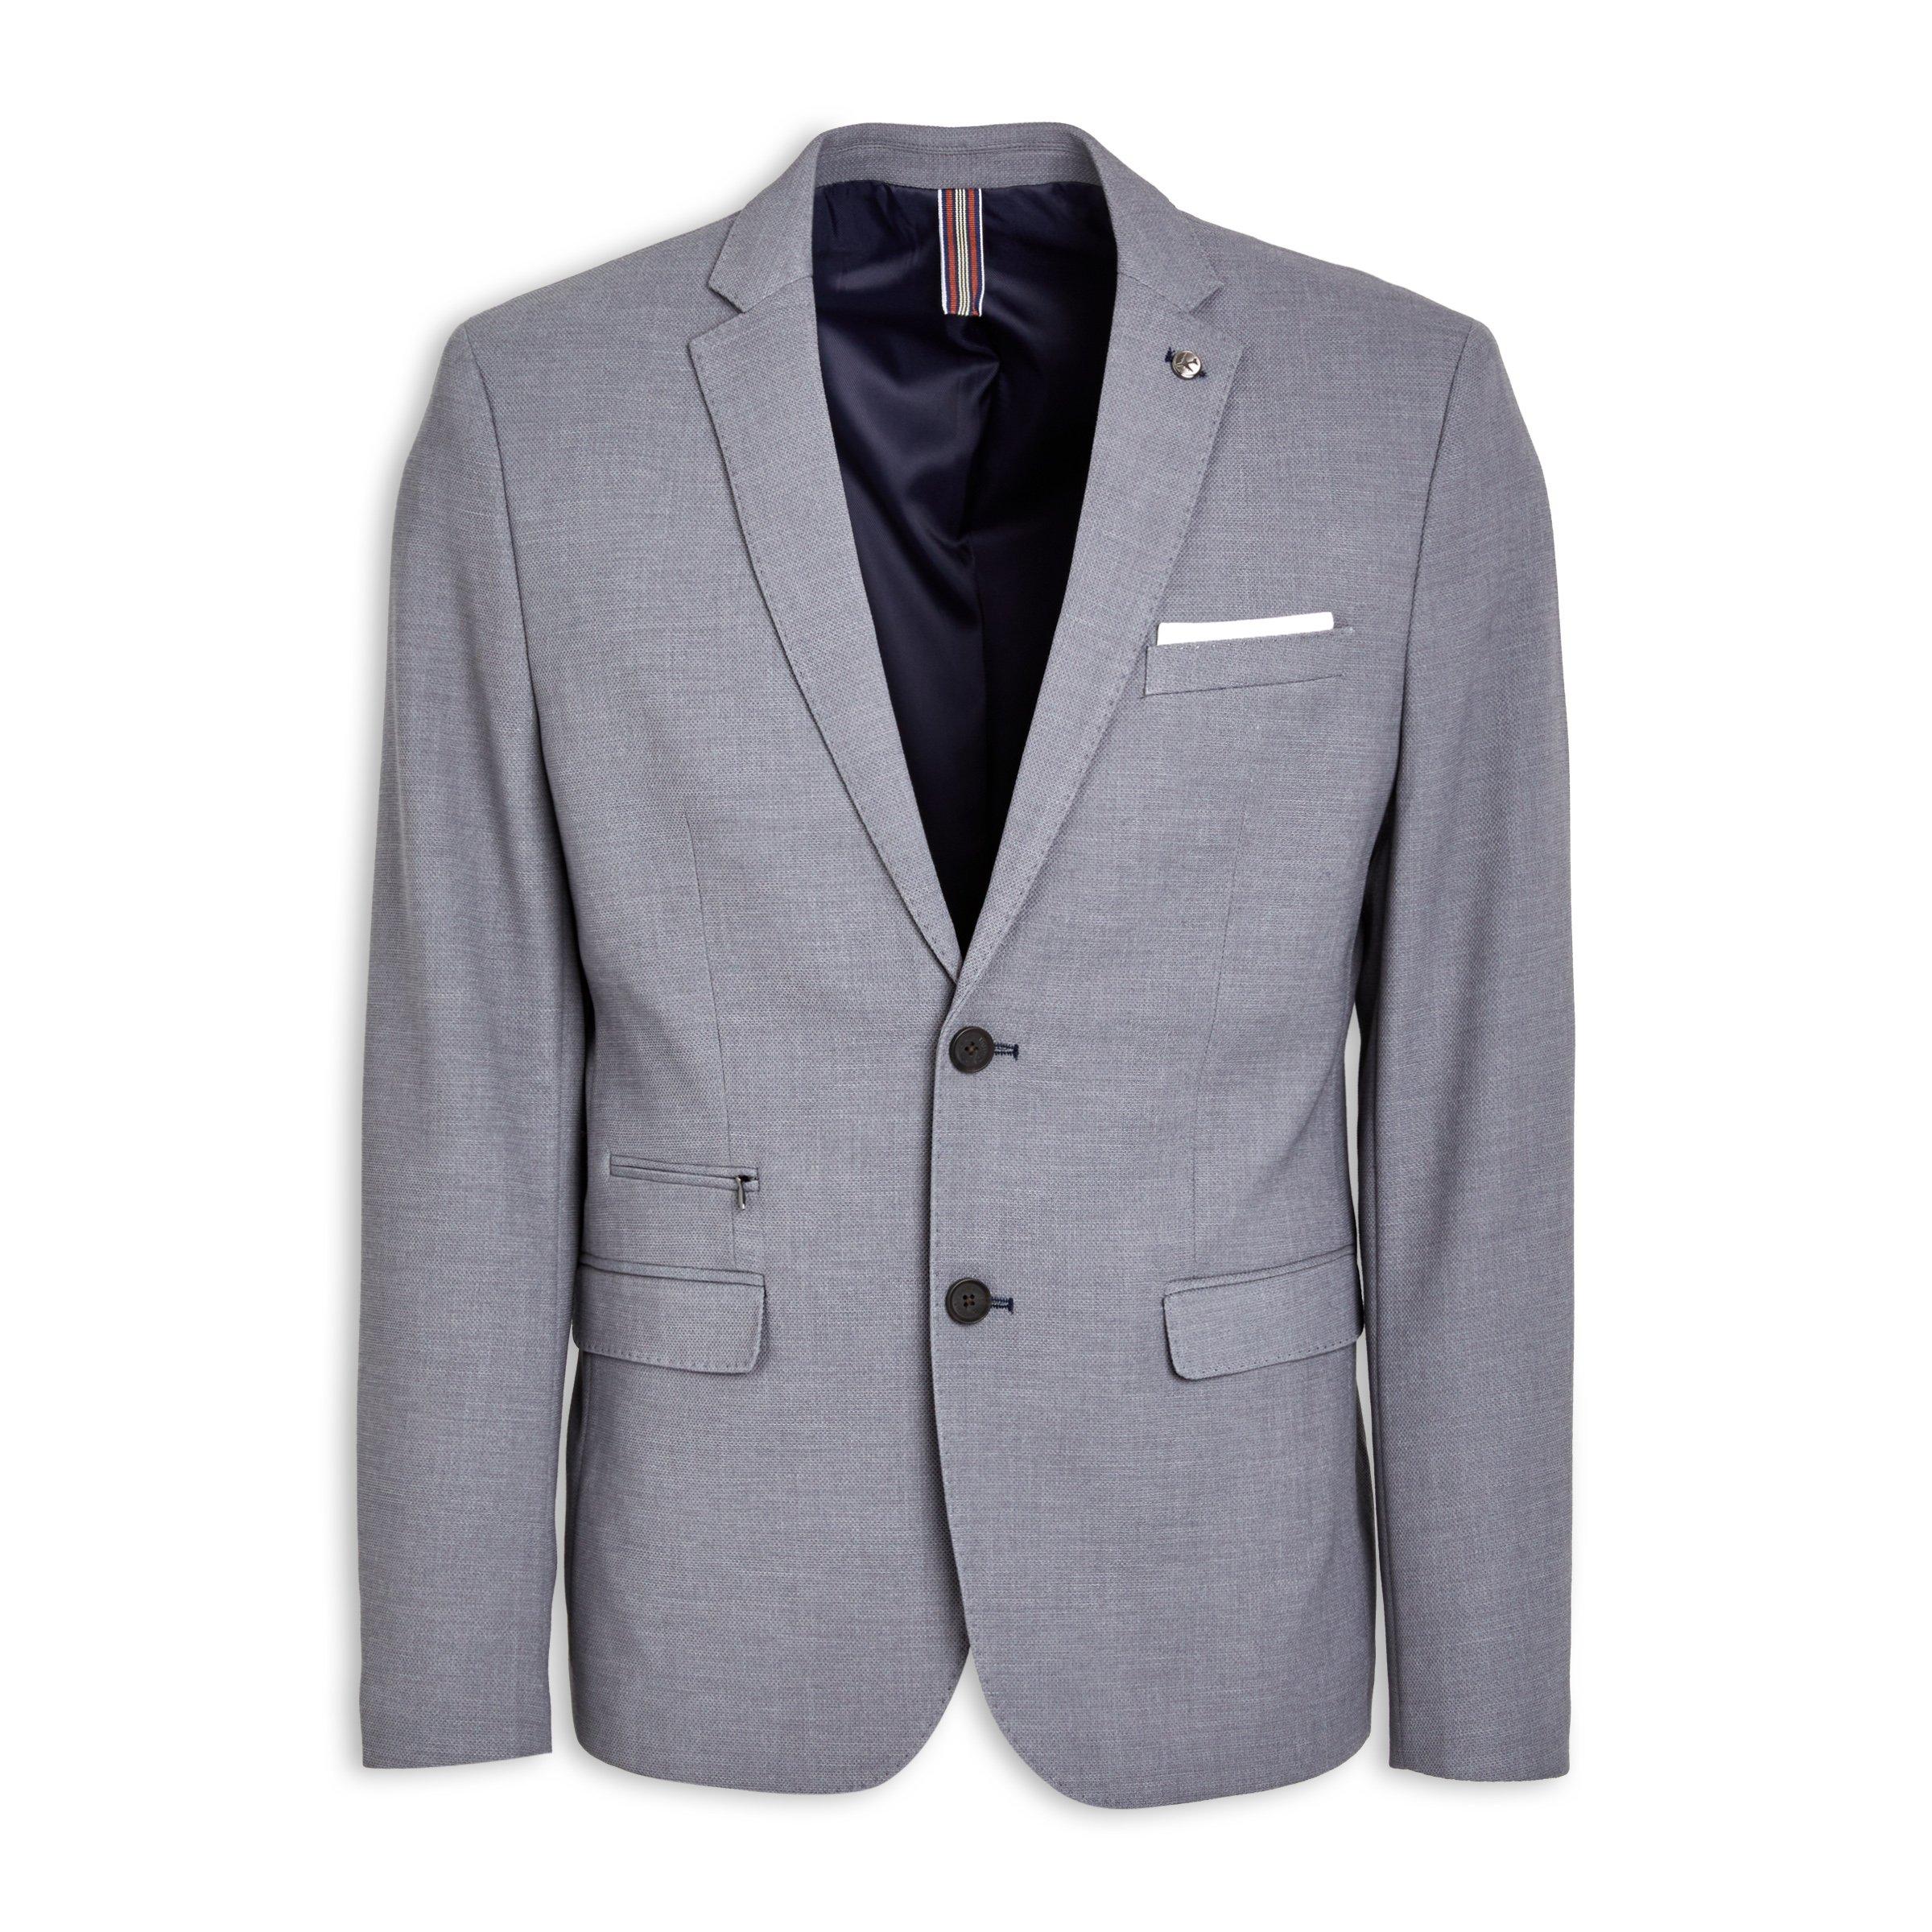 Buy Truworths Man Grey Knit Blazer Online | Truworths